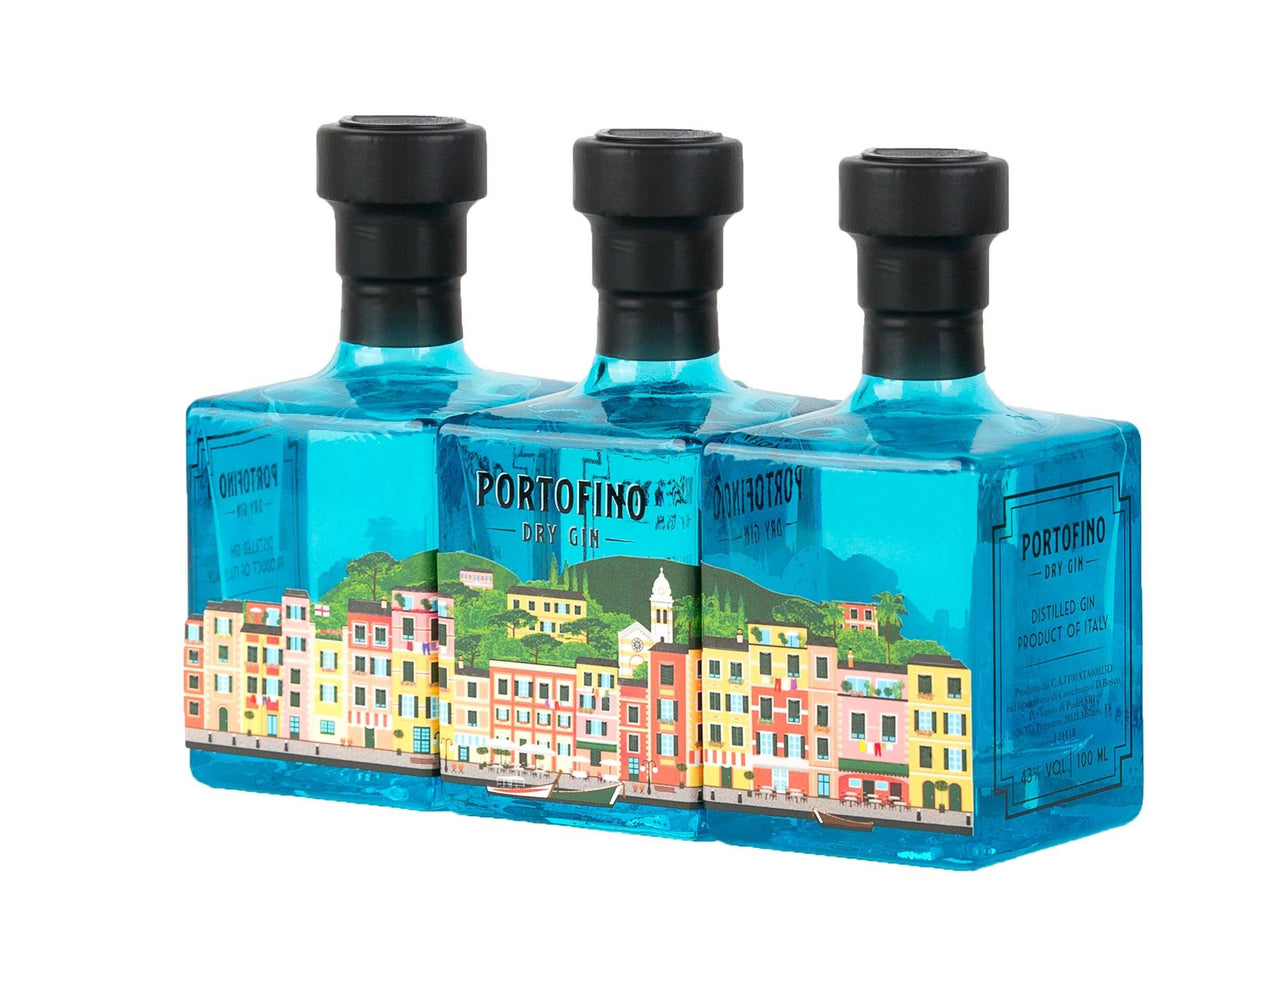 PORTOFINO DRY GIN PANORAMA BUNDLE - 100 ML - Portofino Dry Gin